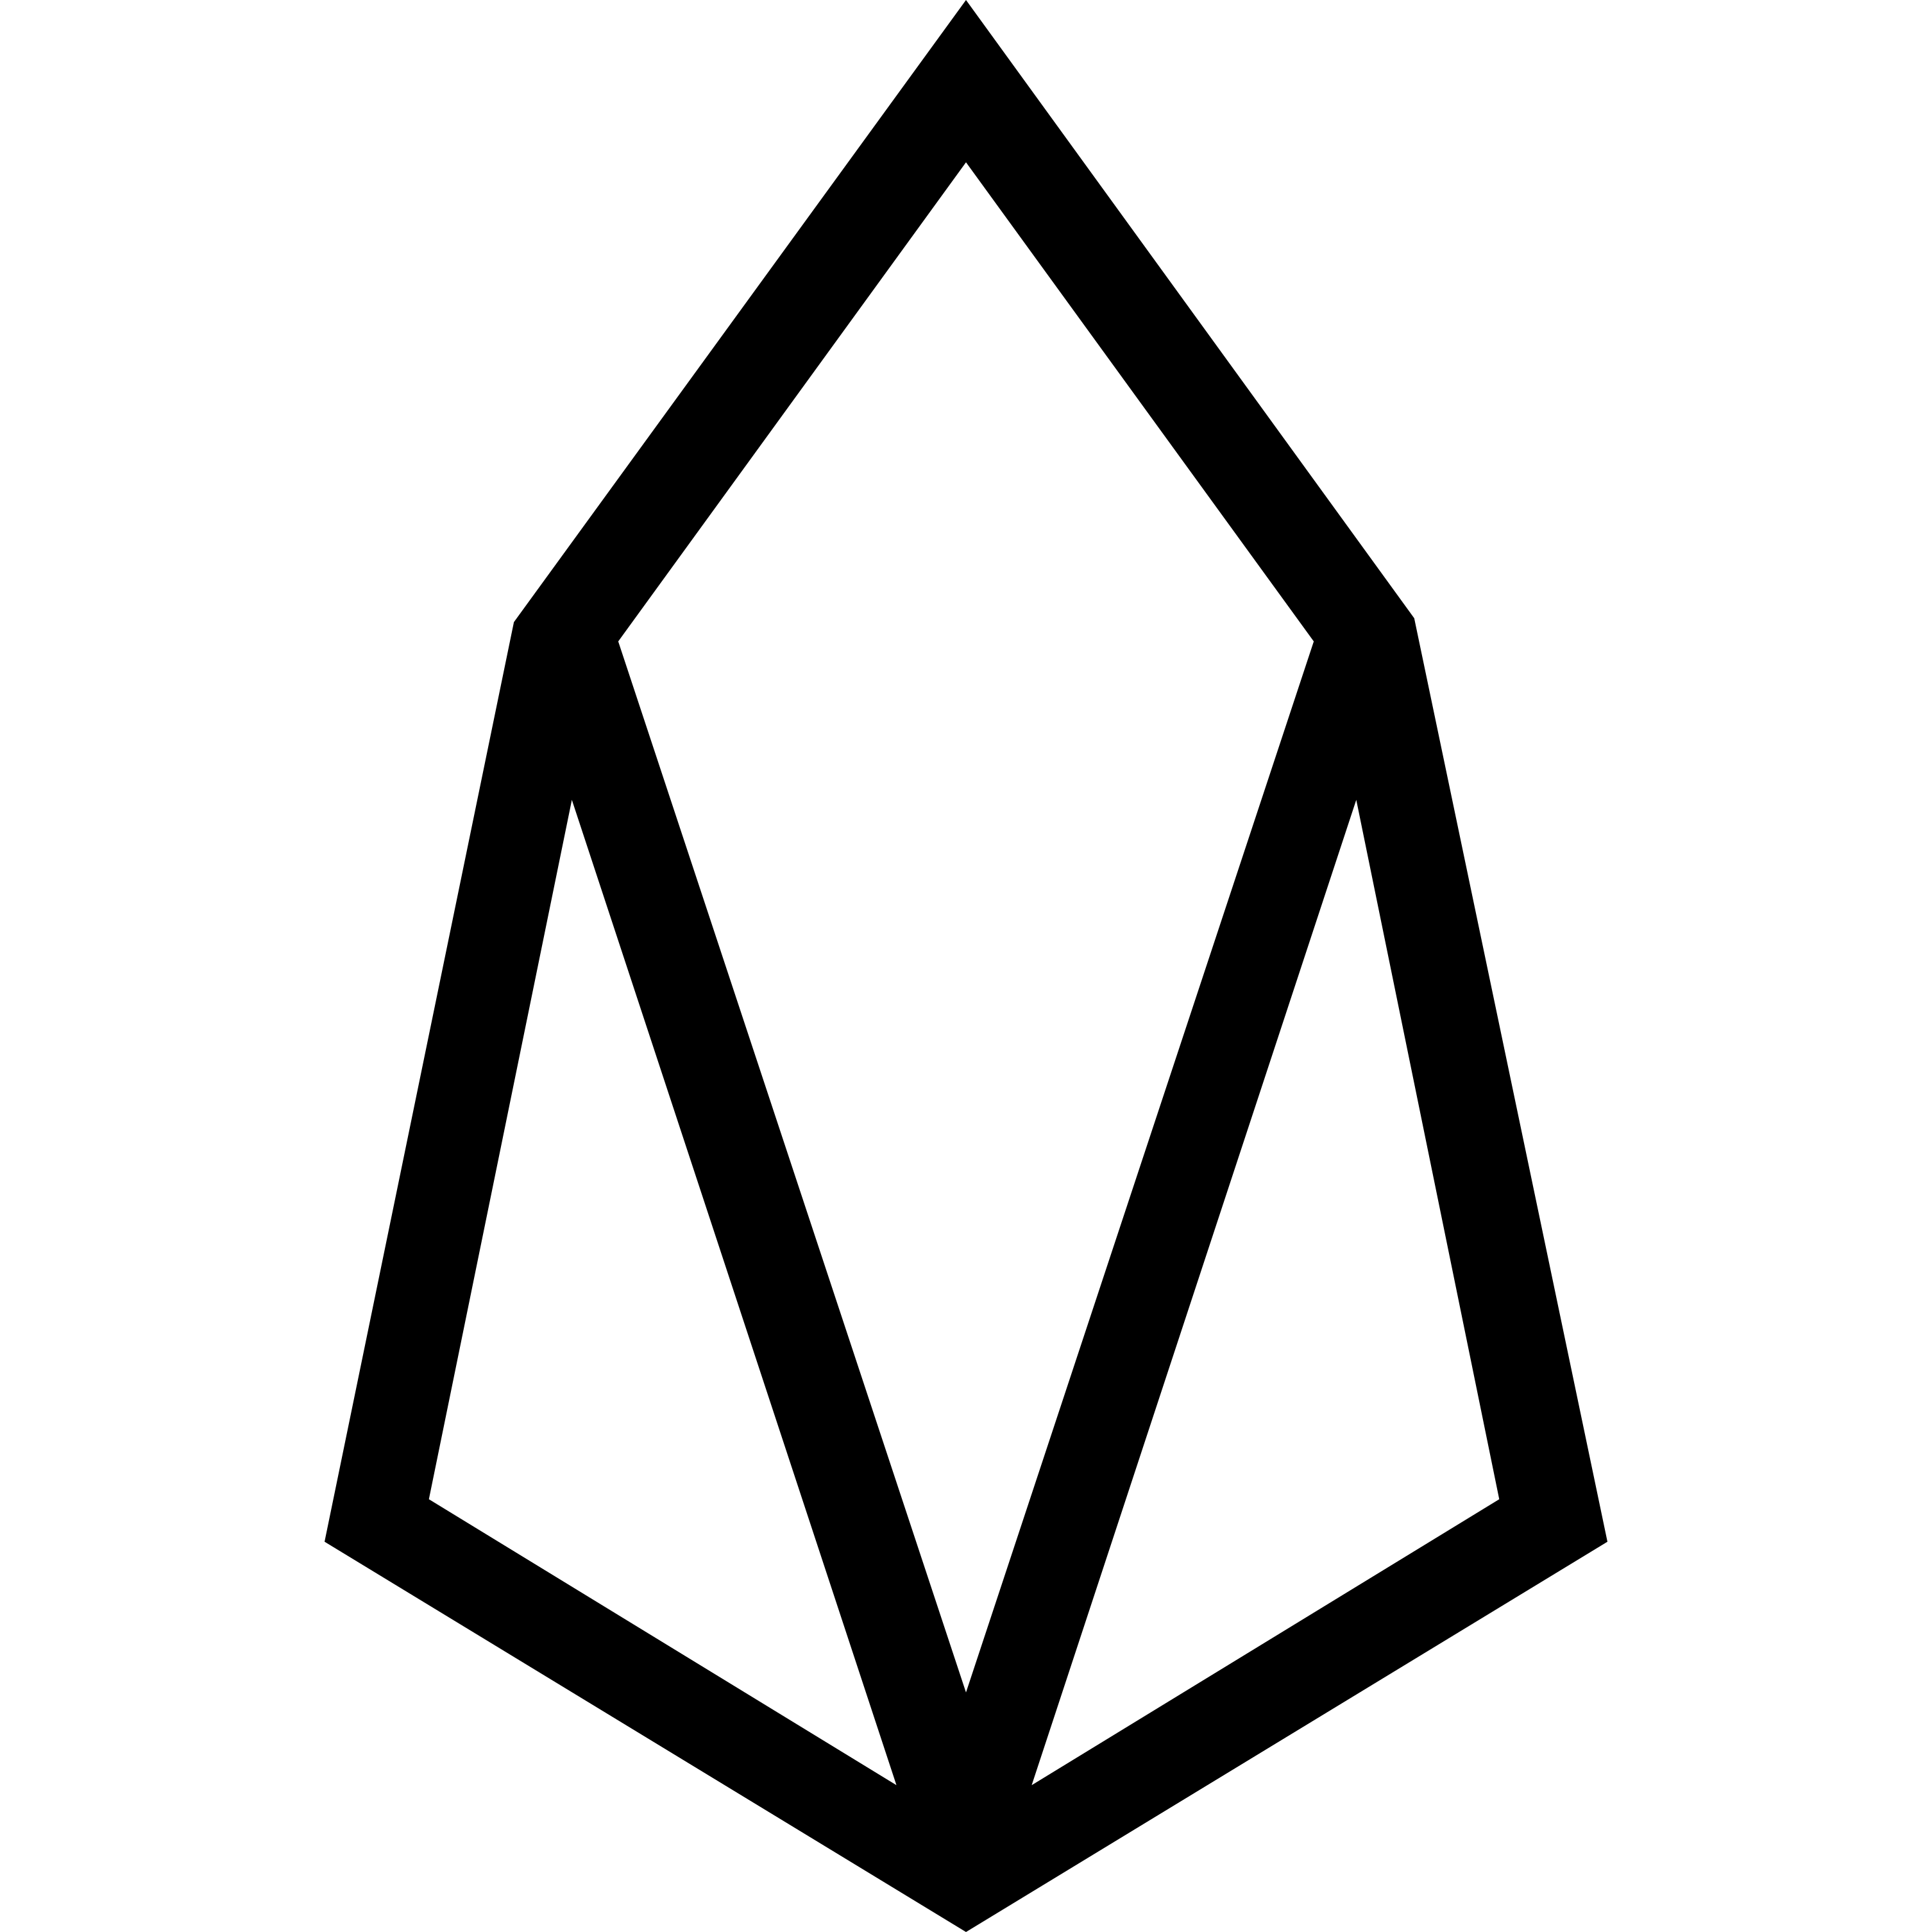 Eos crypto logo ethereum fork 2018